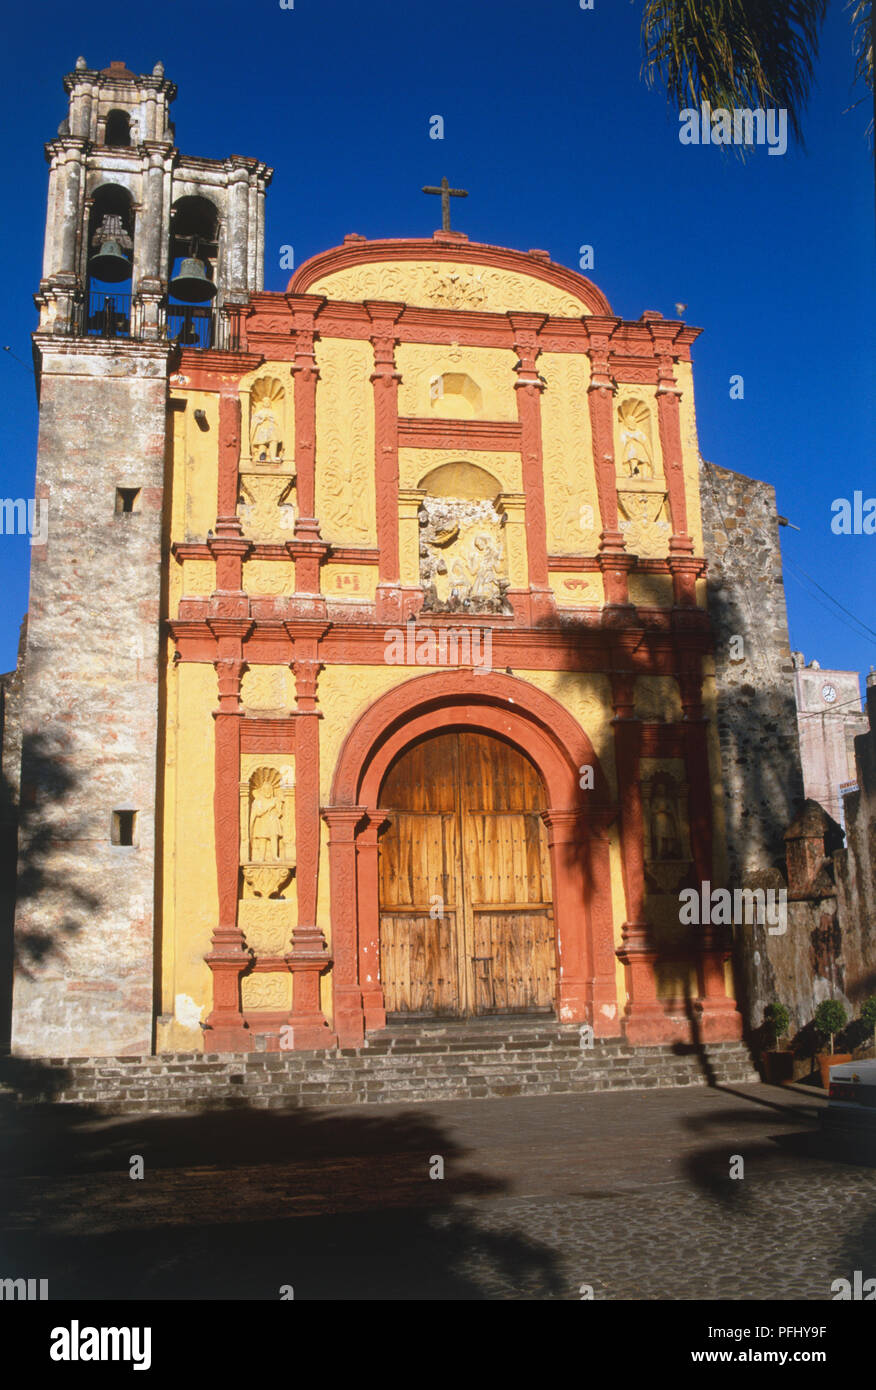 Mexico, Cuernavaca, yellow and red facade of Catedral de la Asuncion. Stock Photo